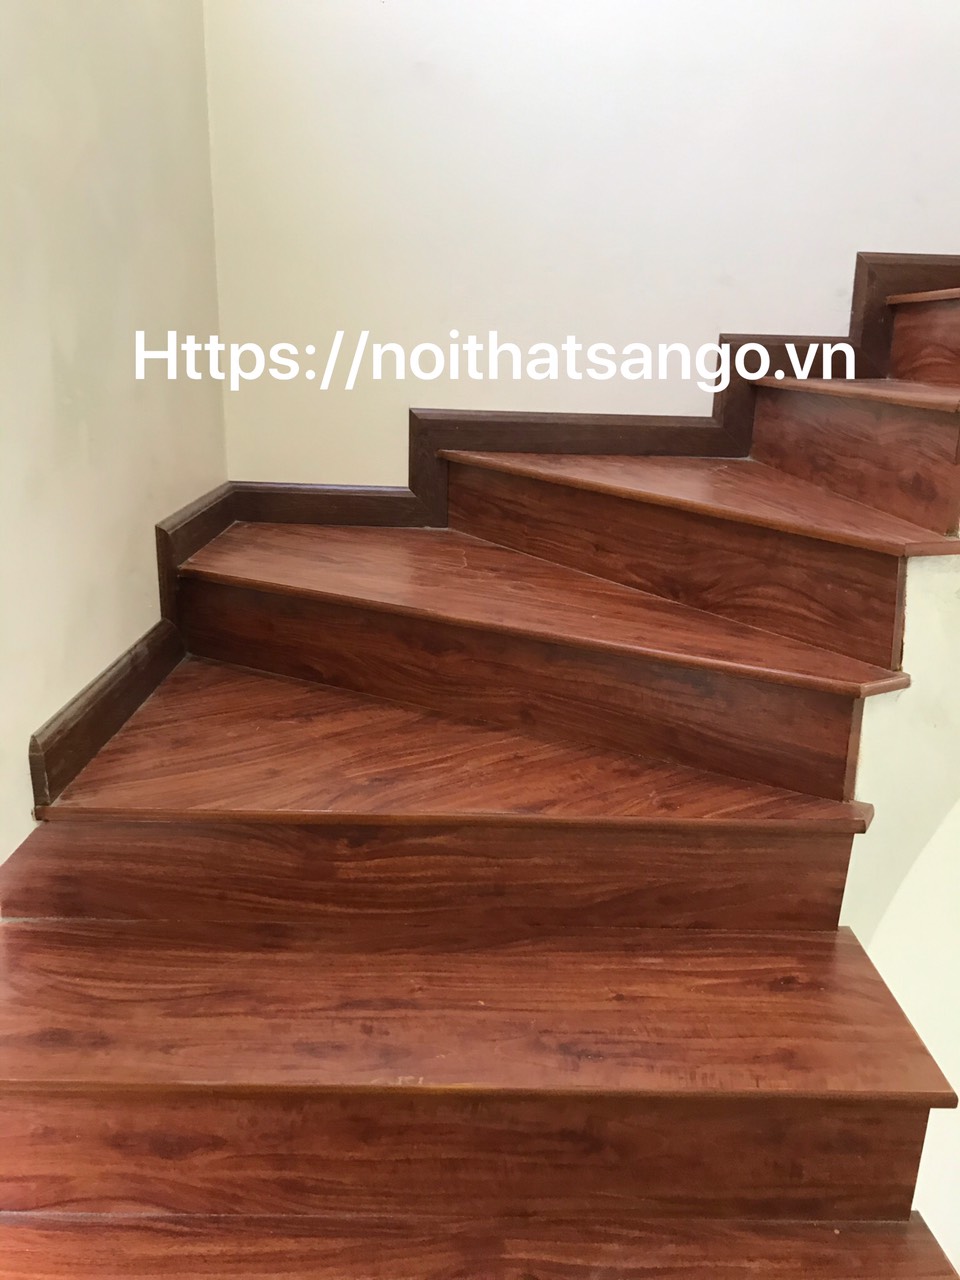 Cầu thang gỗ công nghiệp báo giá 2020 rẻ nhất thị trường Hà Nội